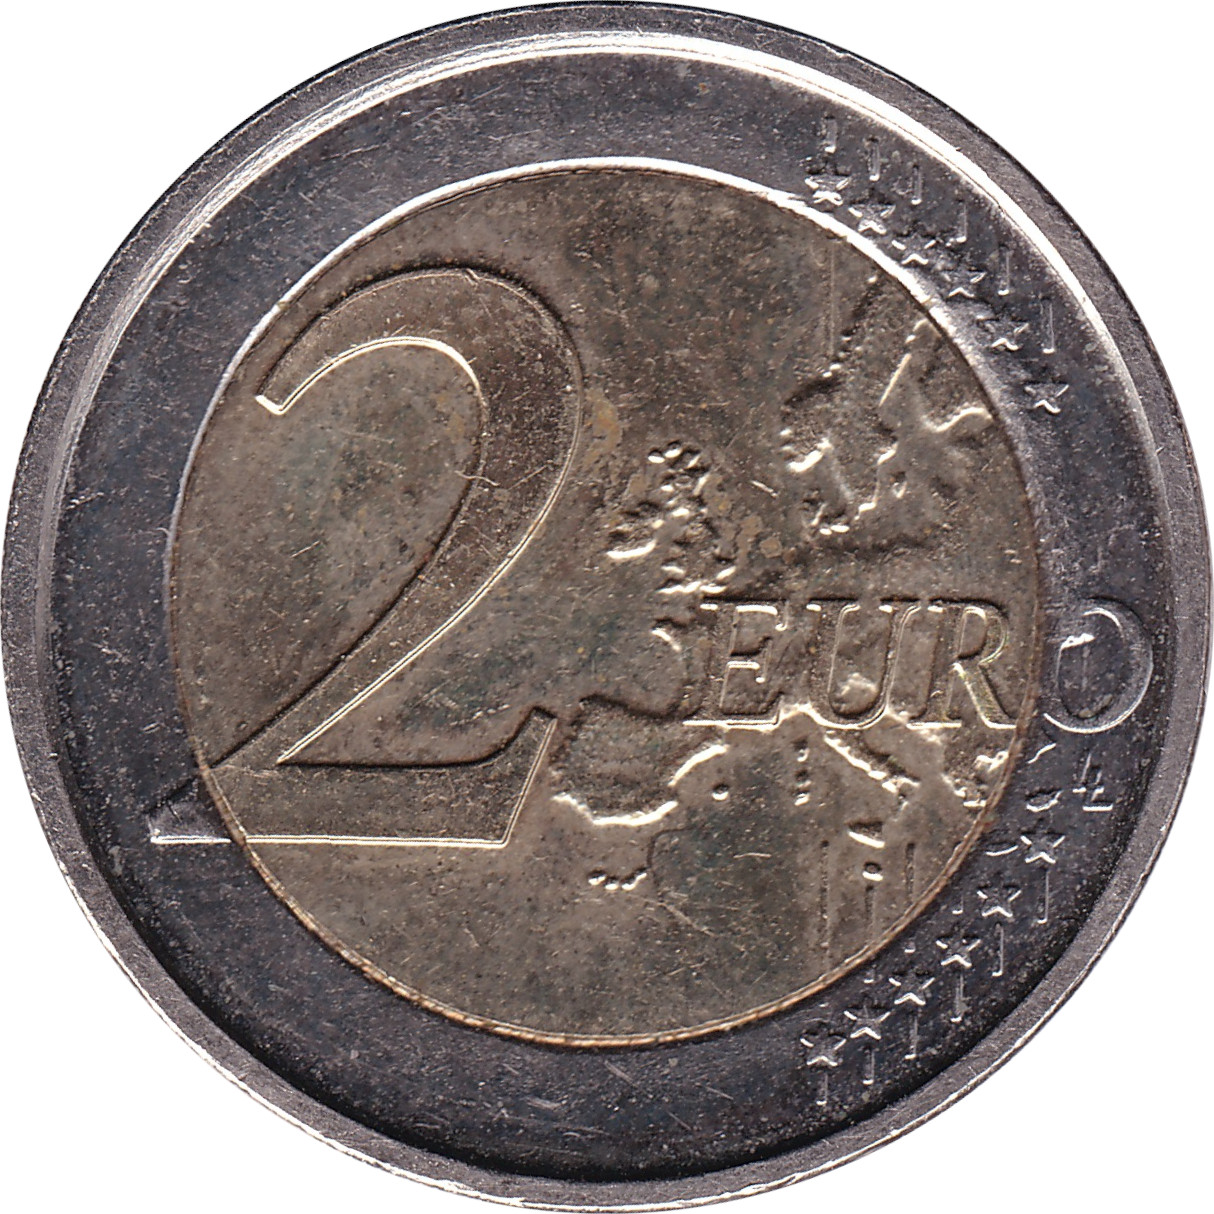 2 euro - Traité de Rome - Belgique